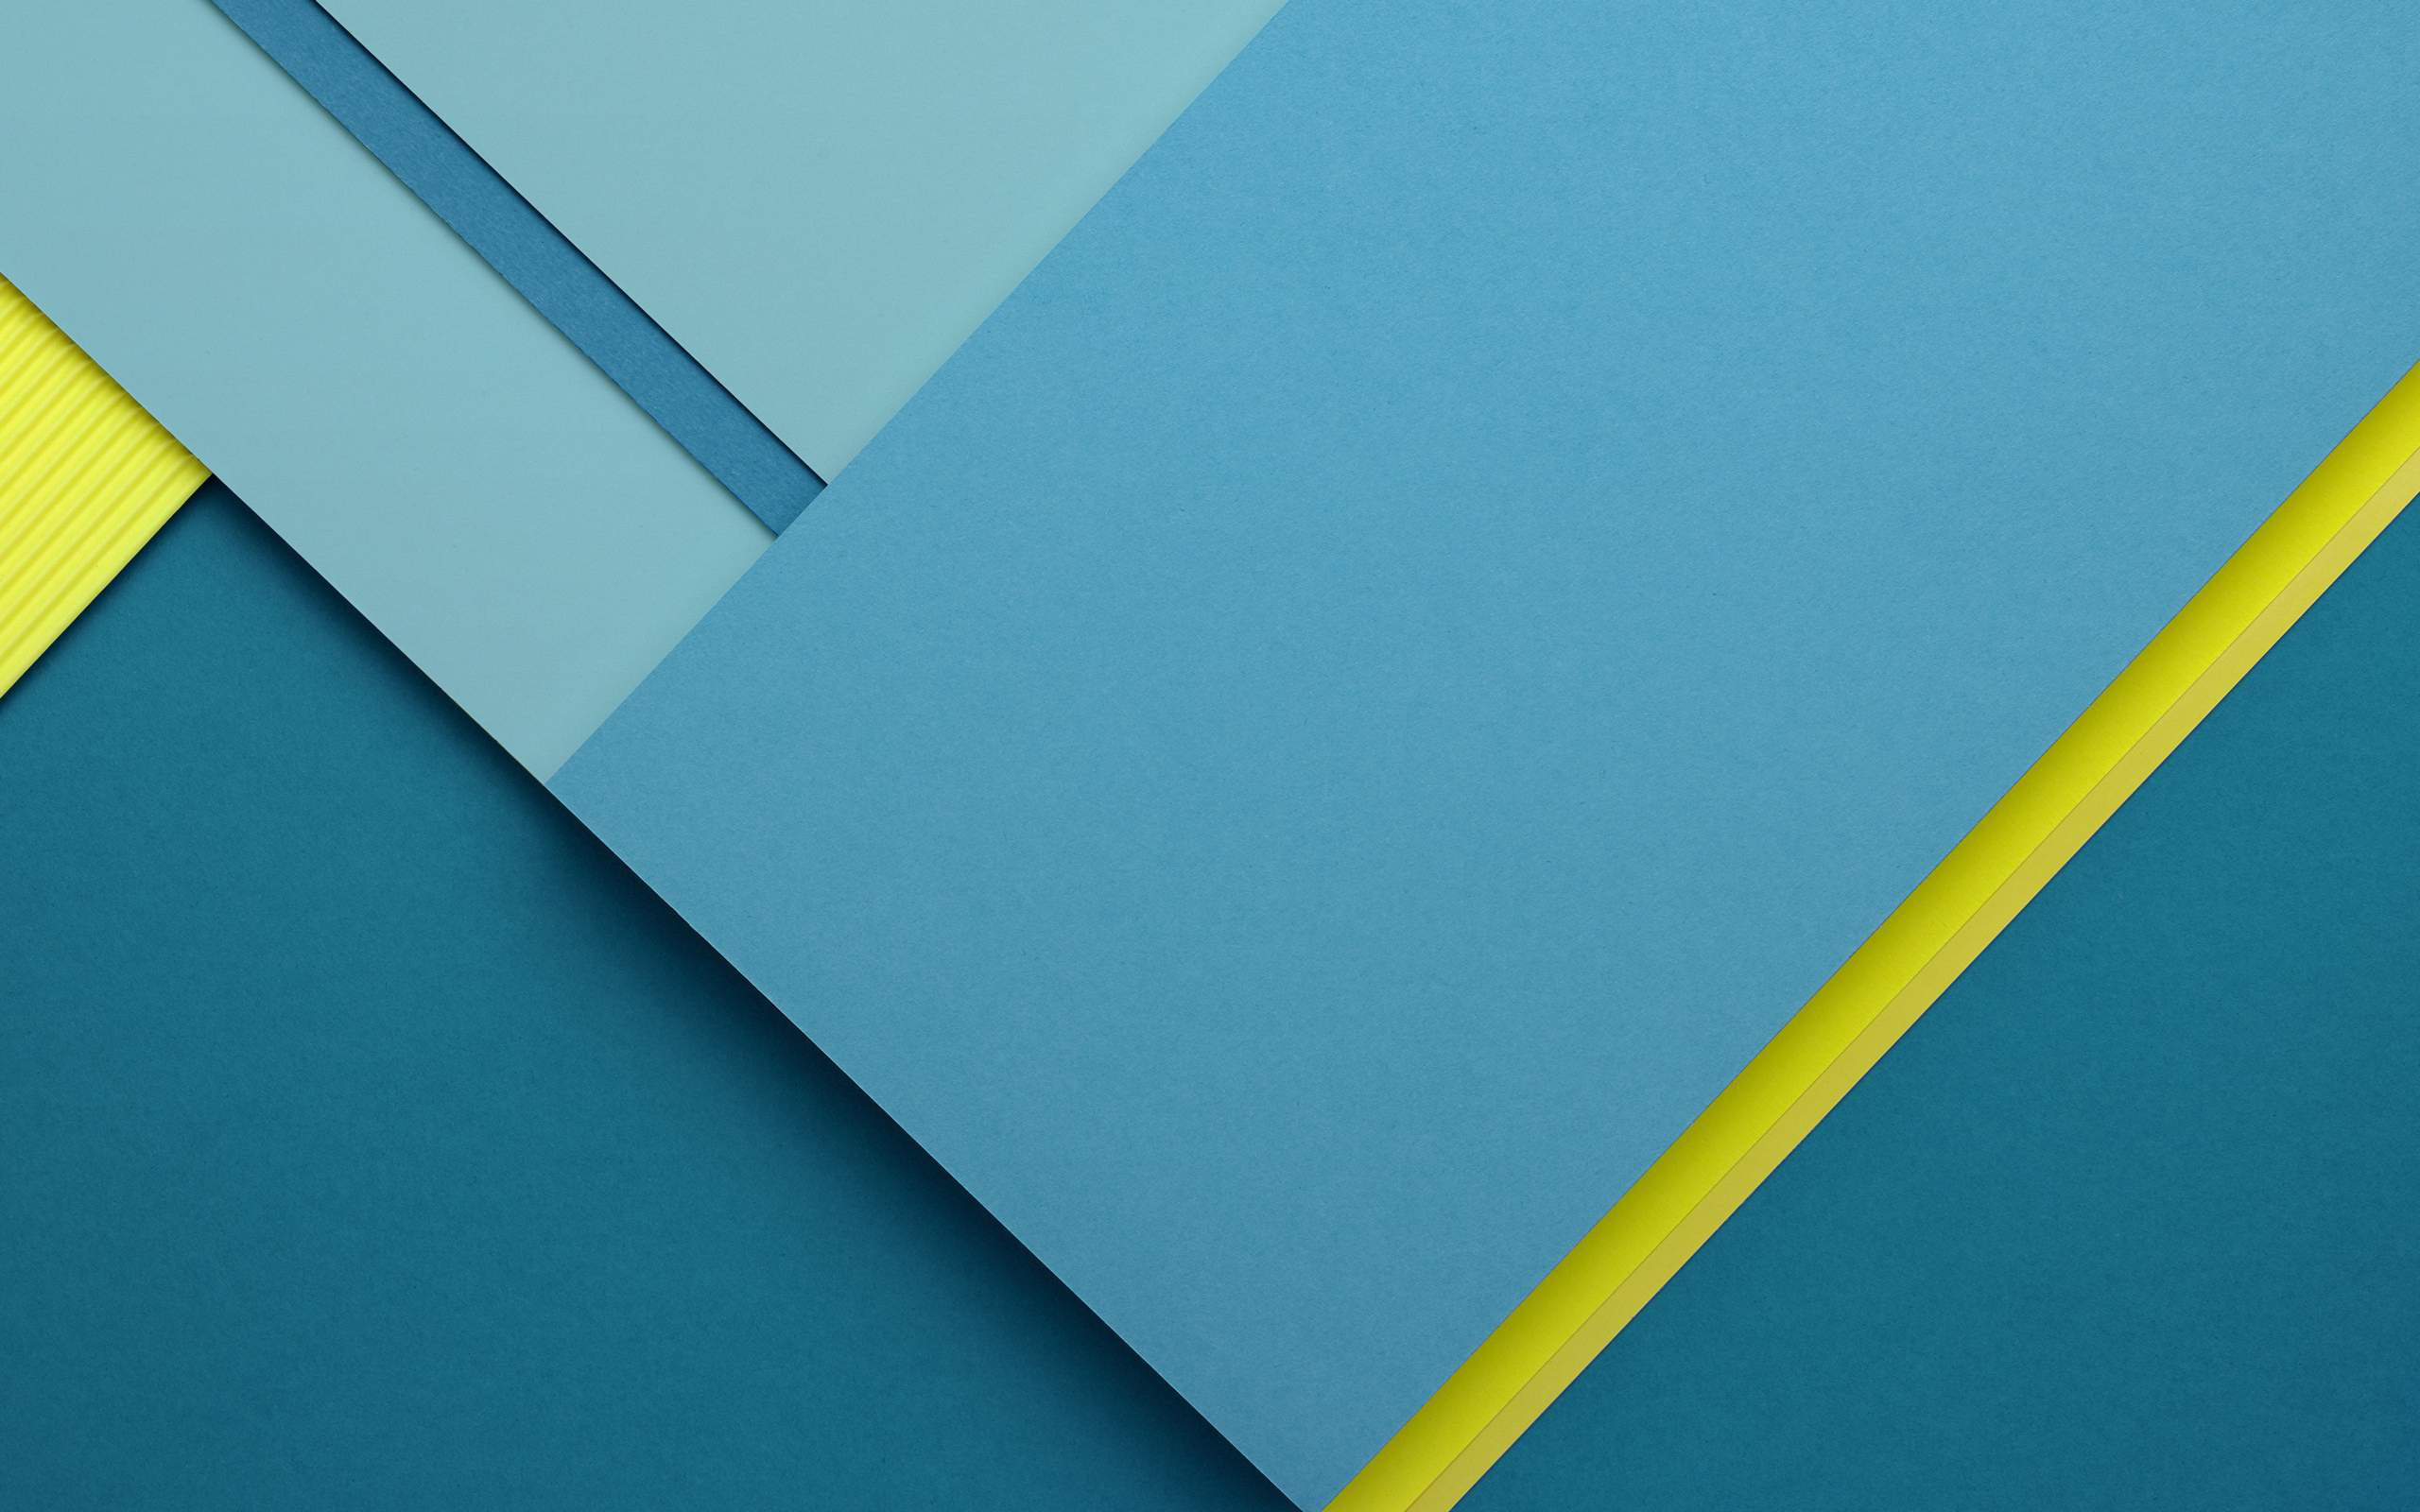 fondos de pantalla de chrome os,azul,amarillo,turquesa,papel,papel de construcción